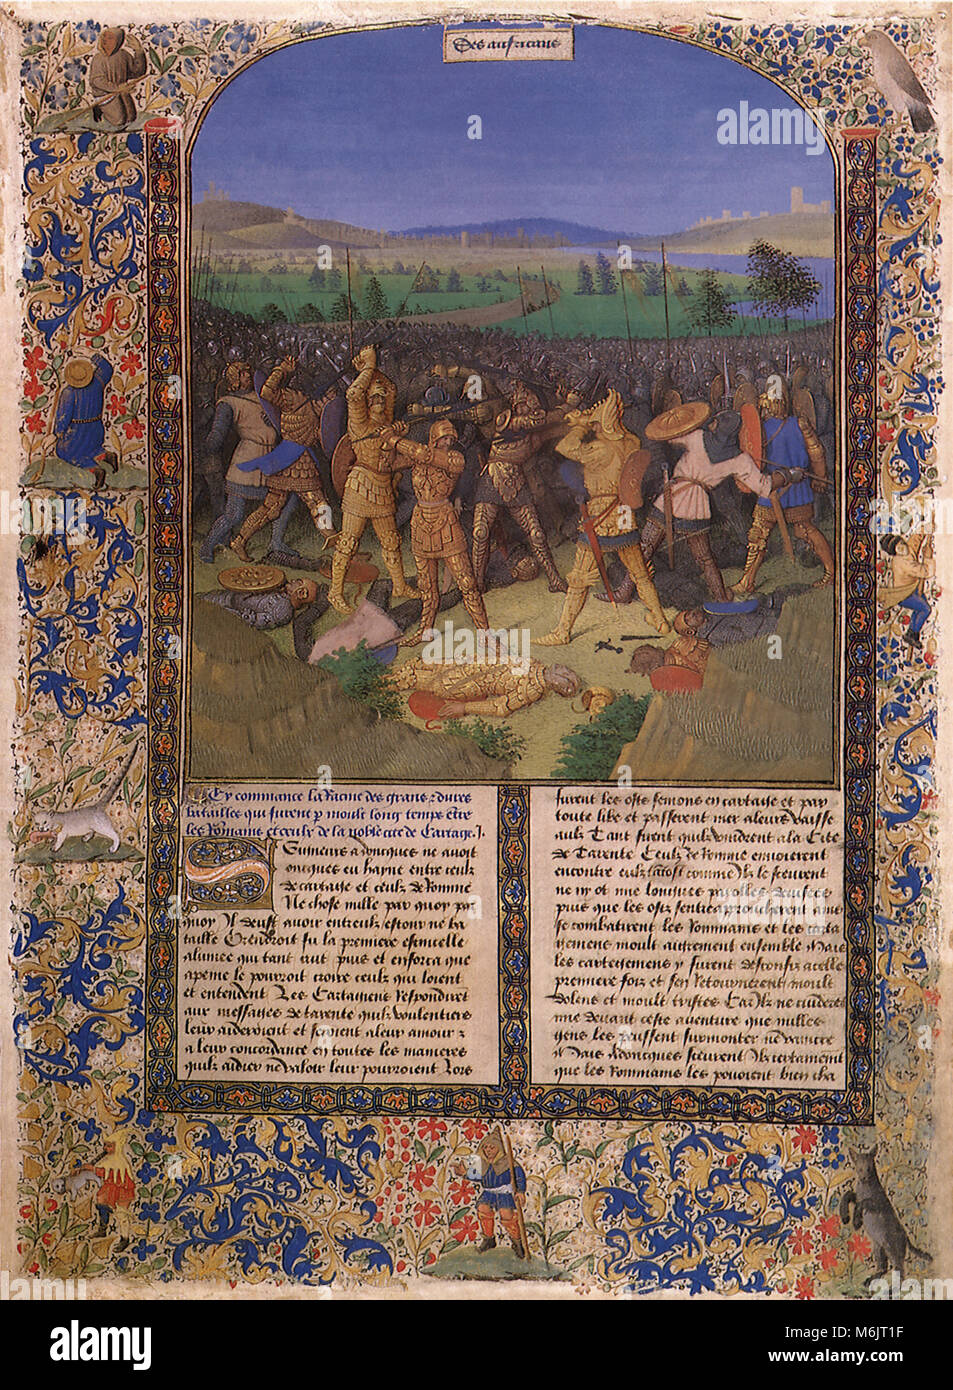 La batalla de los romanos y cartagineses 1475, Fouquet, Jean, 1475. Foto de stock